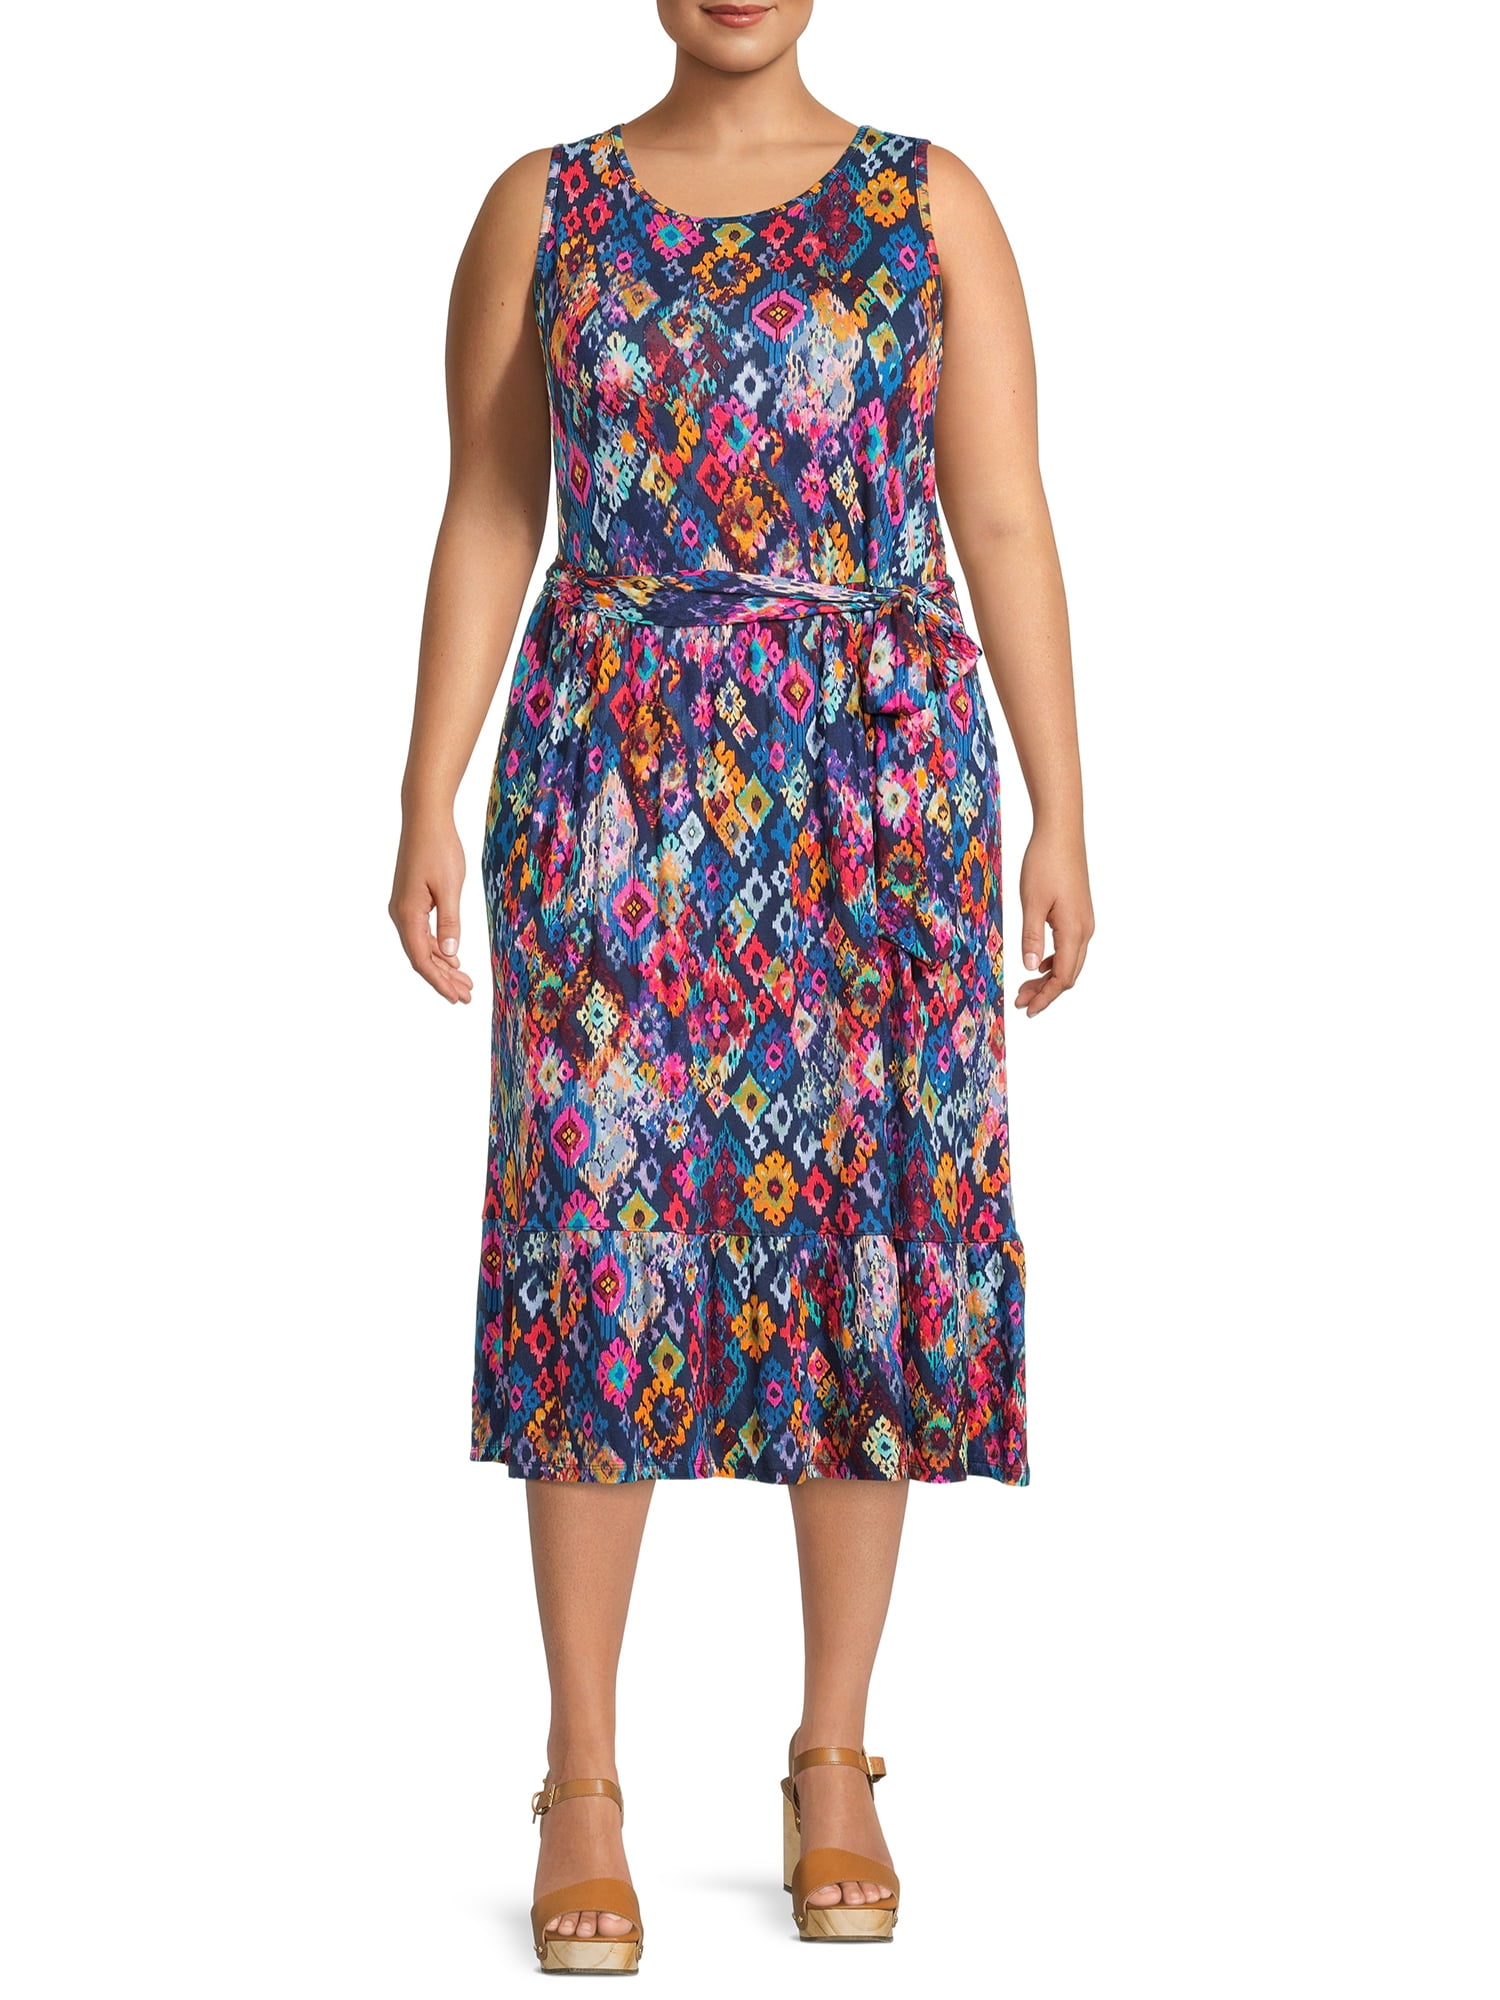 Terra & Sky Women's Plus Size Belted Knit Tank Dress - Walmart.com